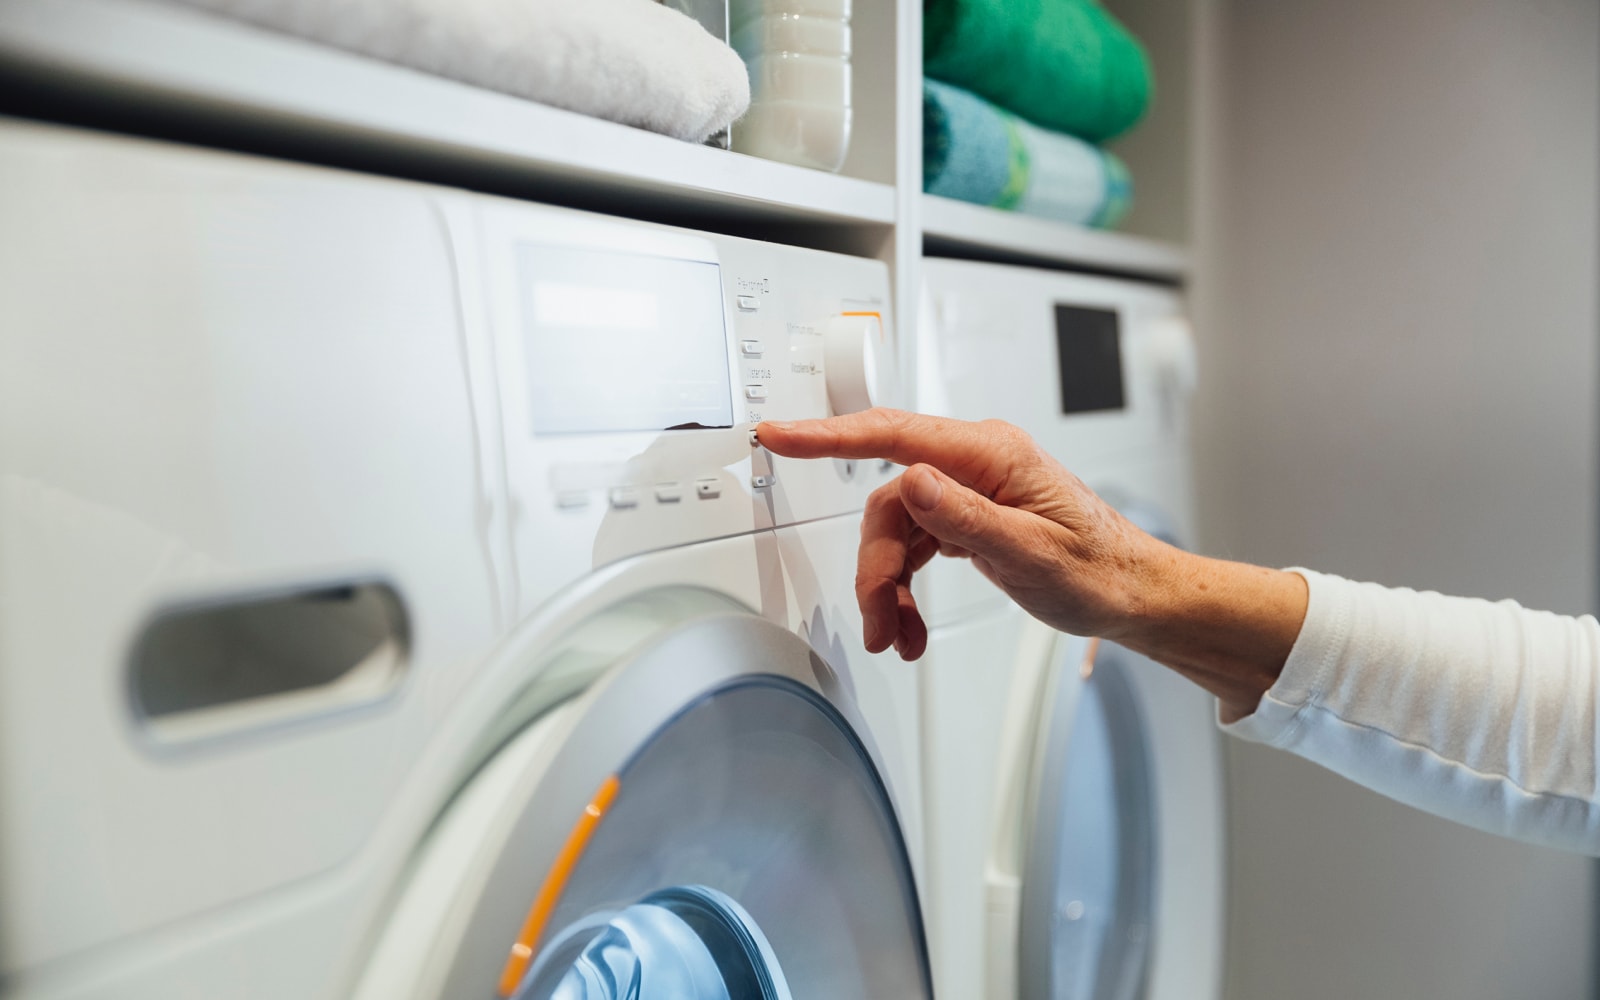 Limpieza: ¿Qué puedes hacer para que tu lavadora deje la ropa más limpia?